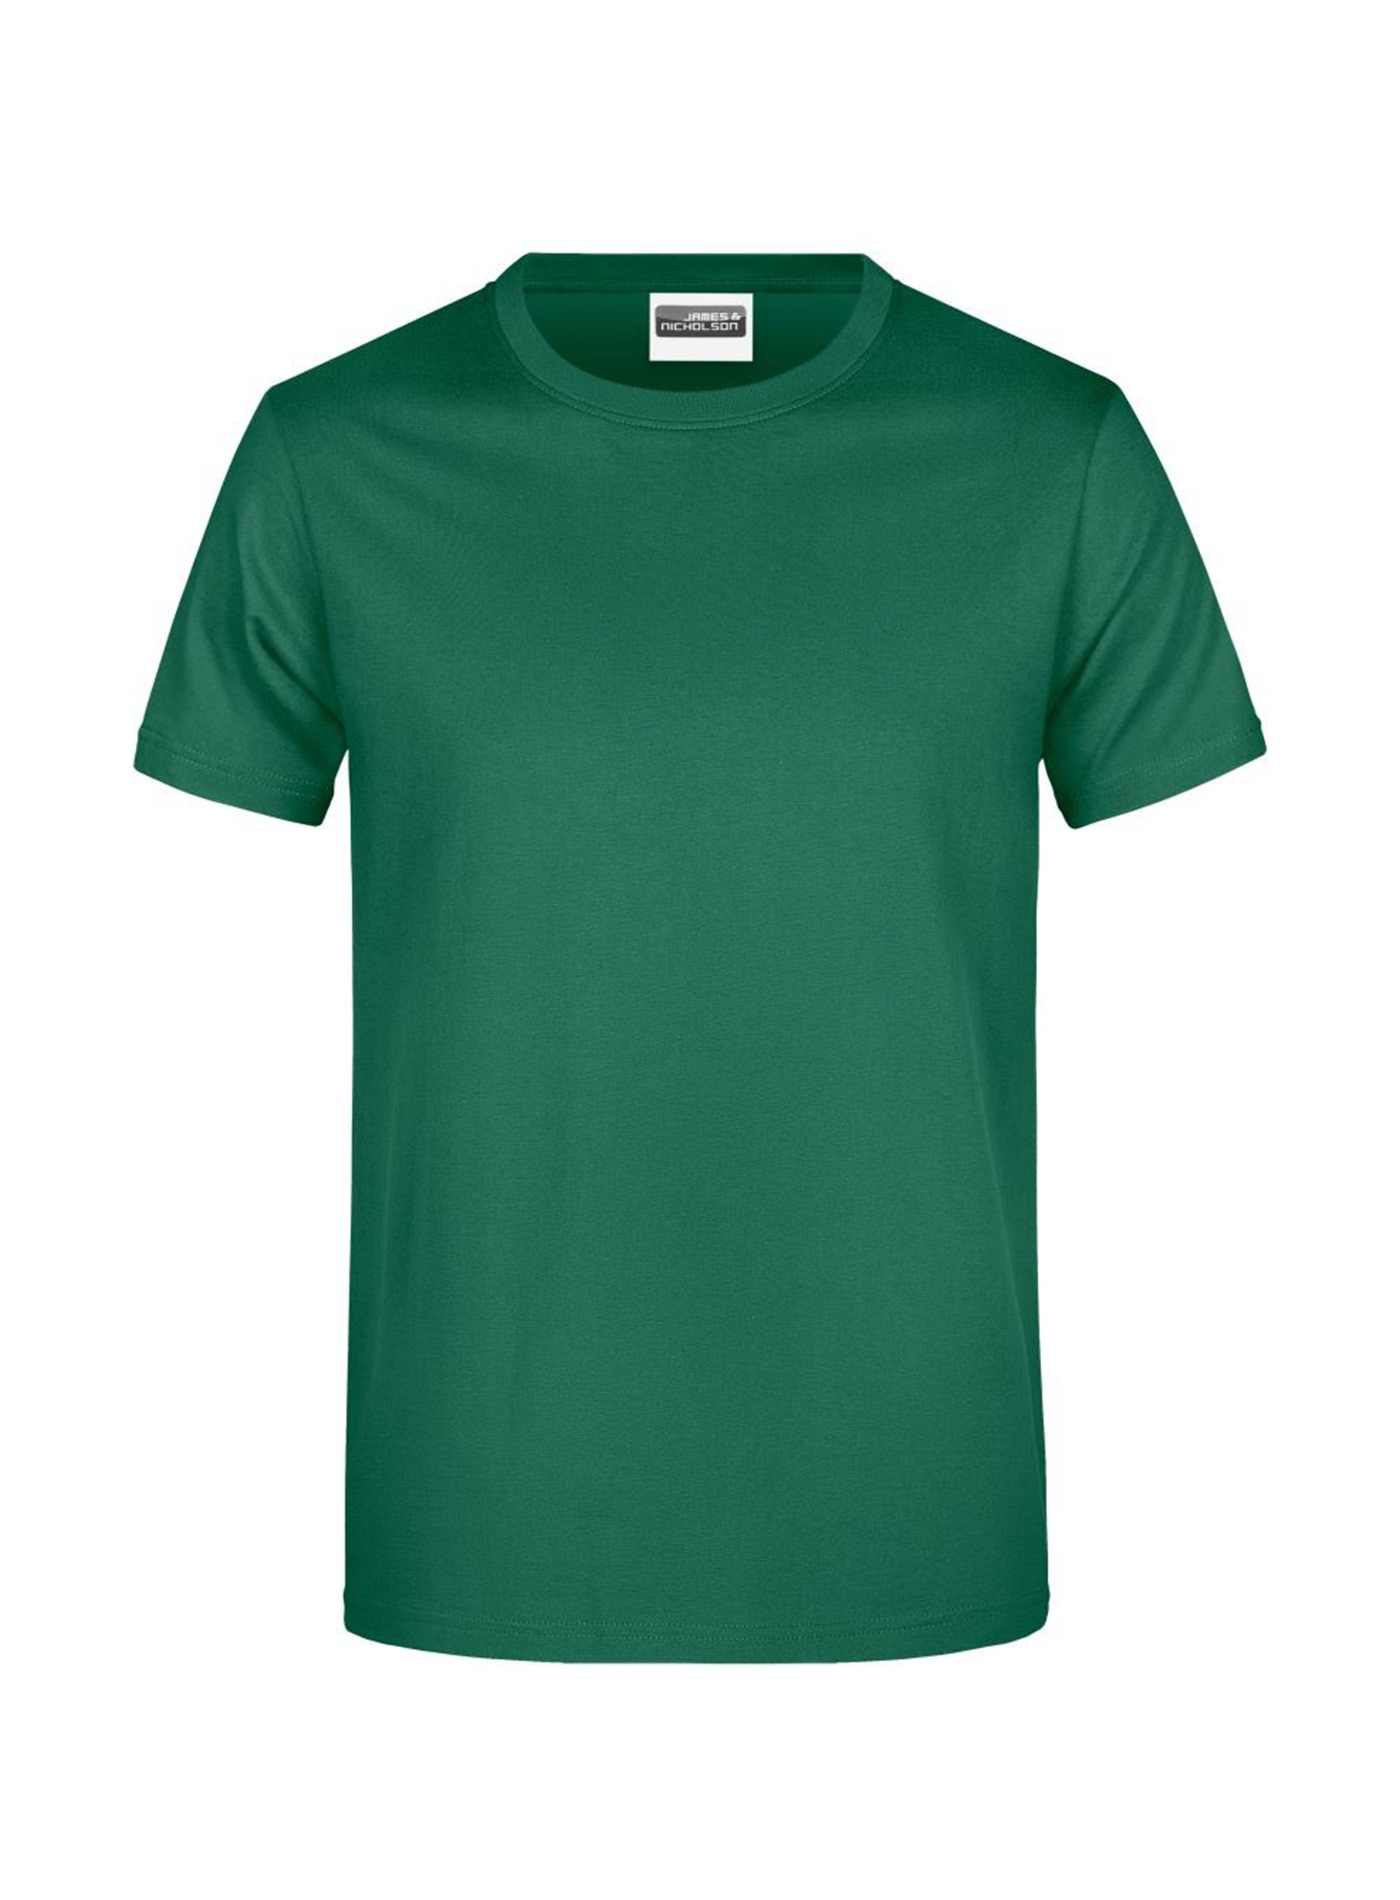 Pánské tričko James & Nicholson Heavy - Irská zelená S